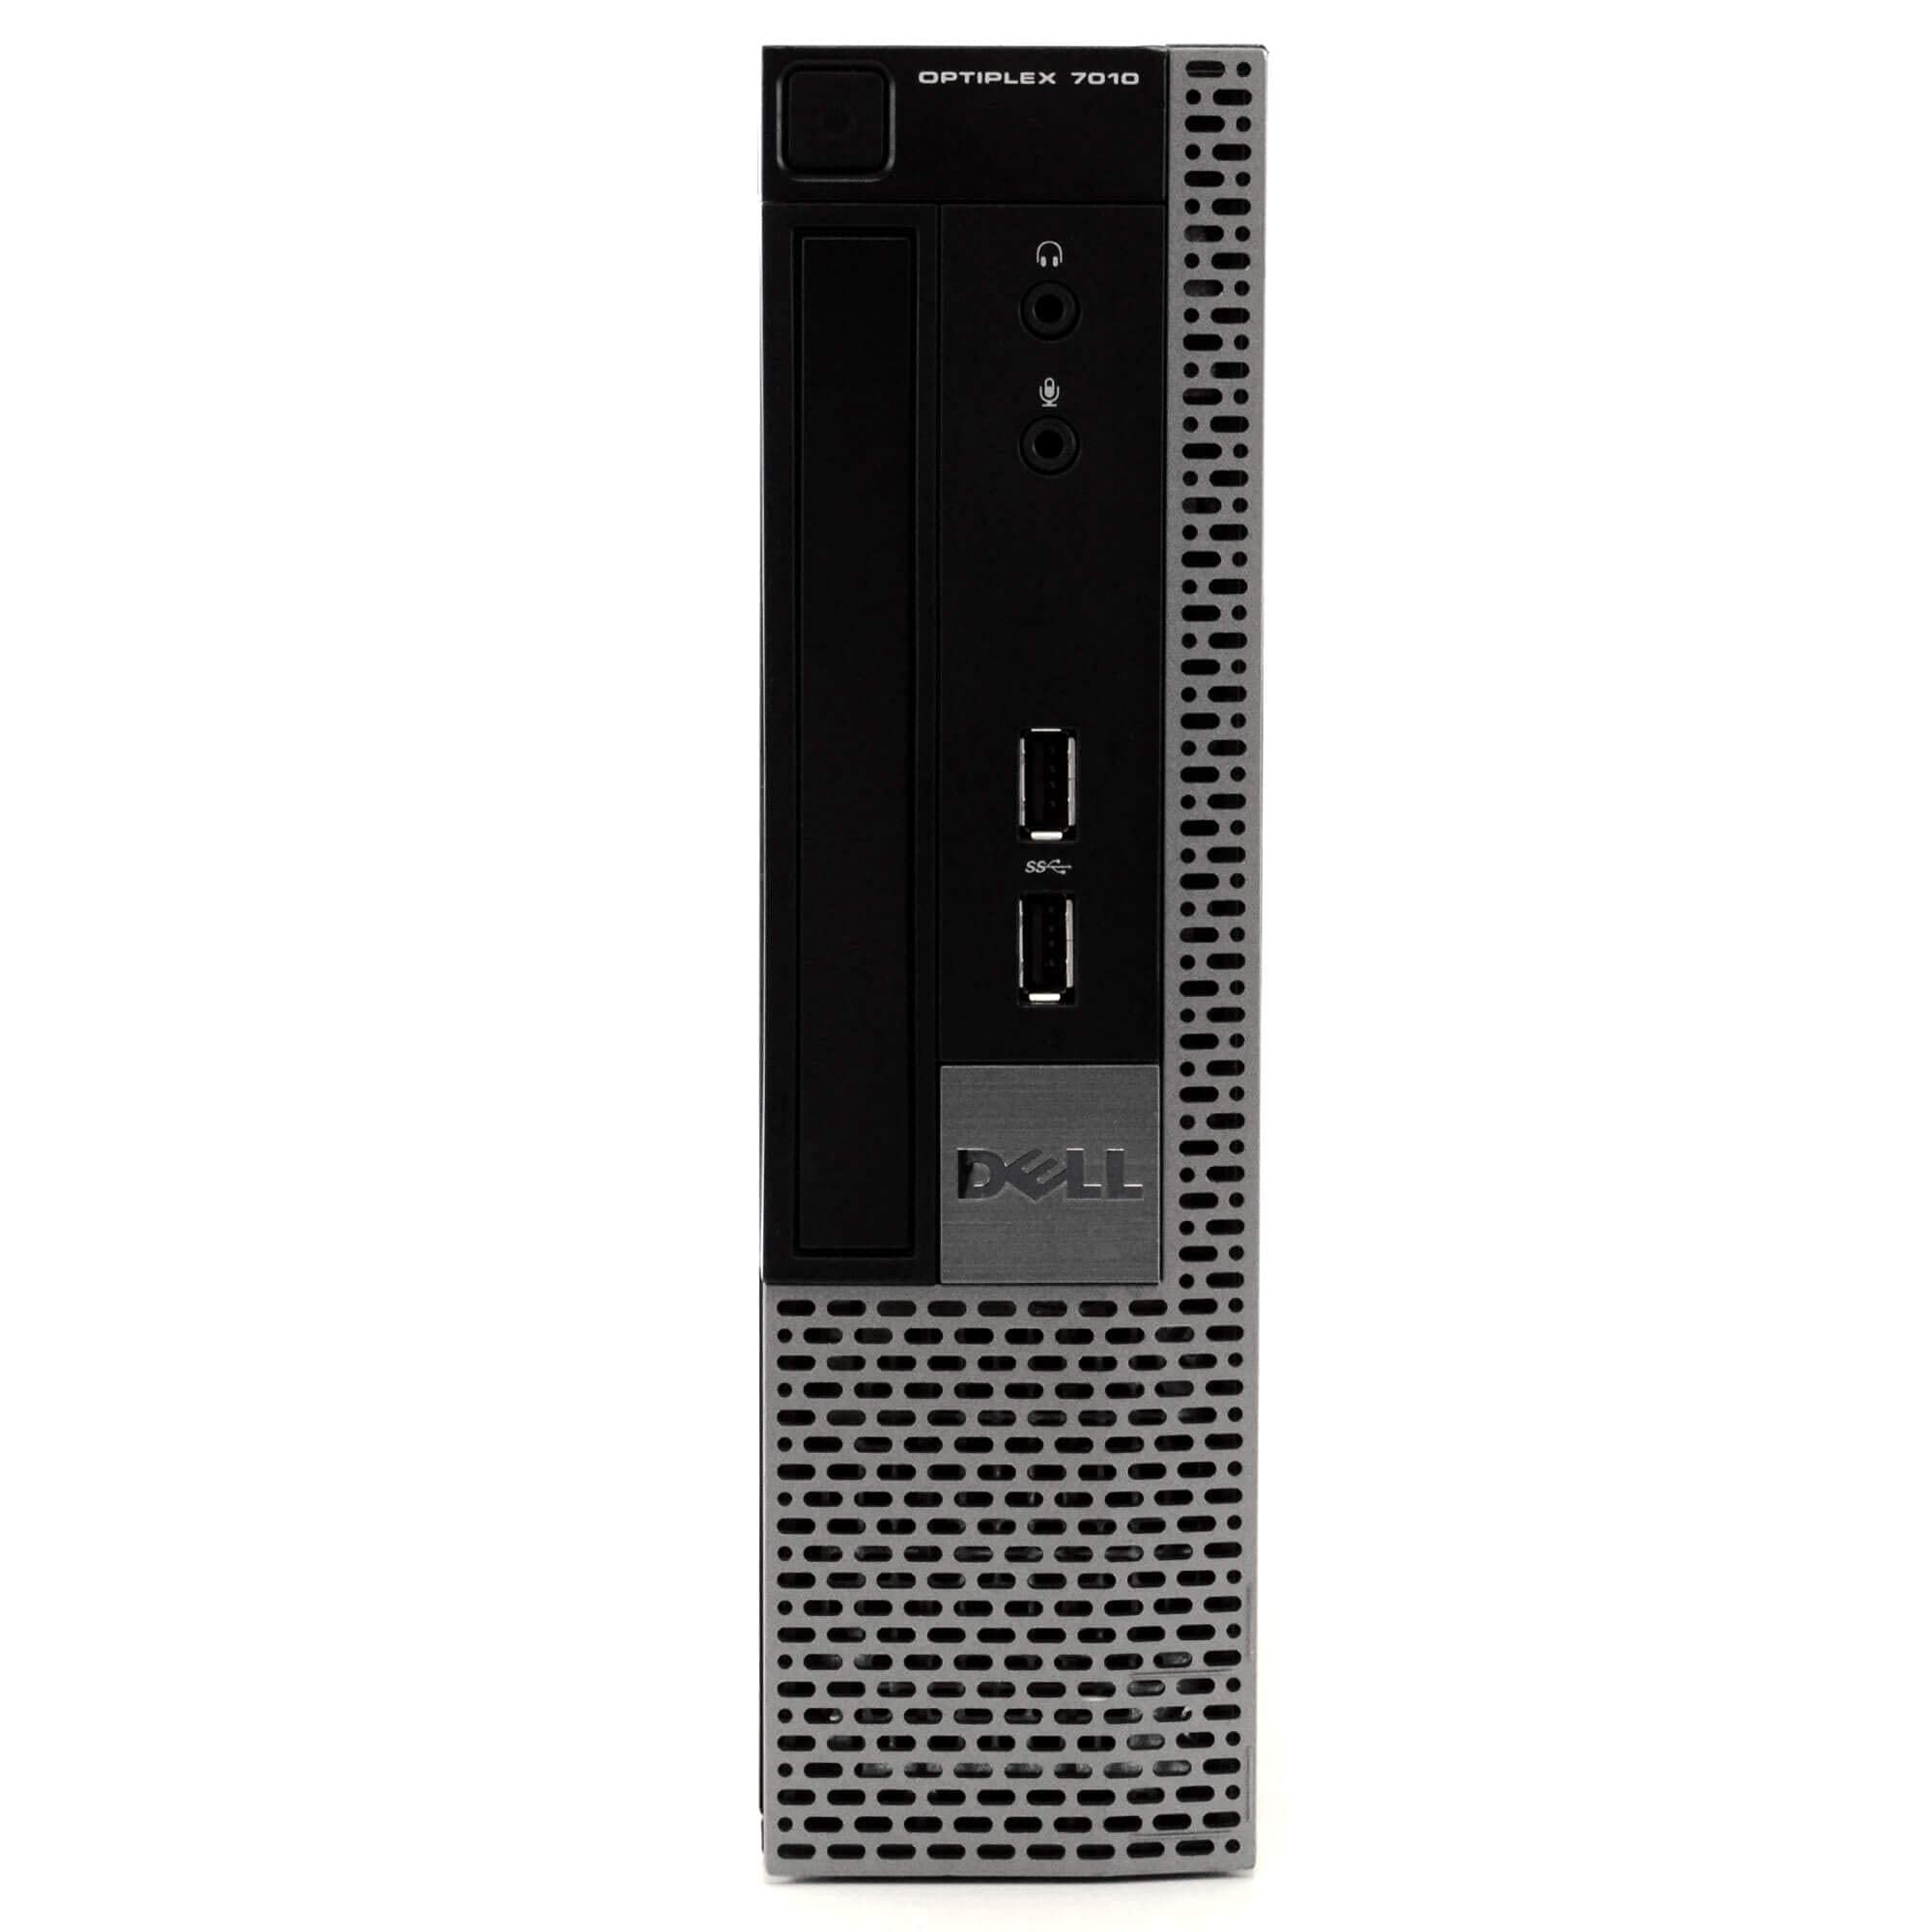 Dell Optiplex 7010 USFF Premium Business Desktop Computer (Intel Quad-Core i5-3470S up to 3.6GHz, 8GB RAM, 500GB HDD, DVD, VGA, DisplayPort, WiFi, Windows 10 Professional) (Renewed)